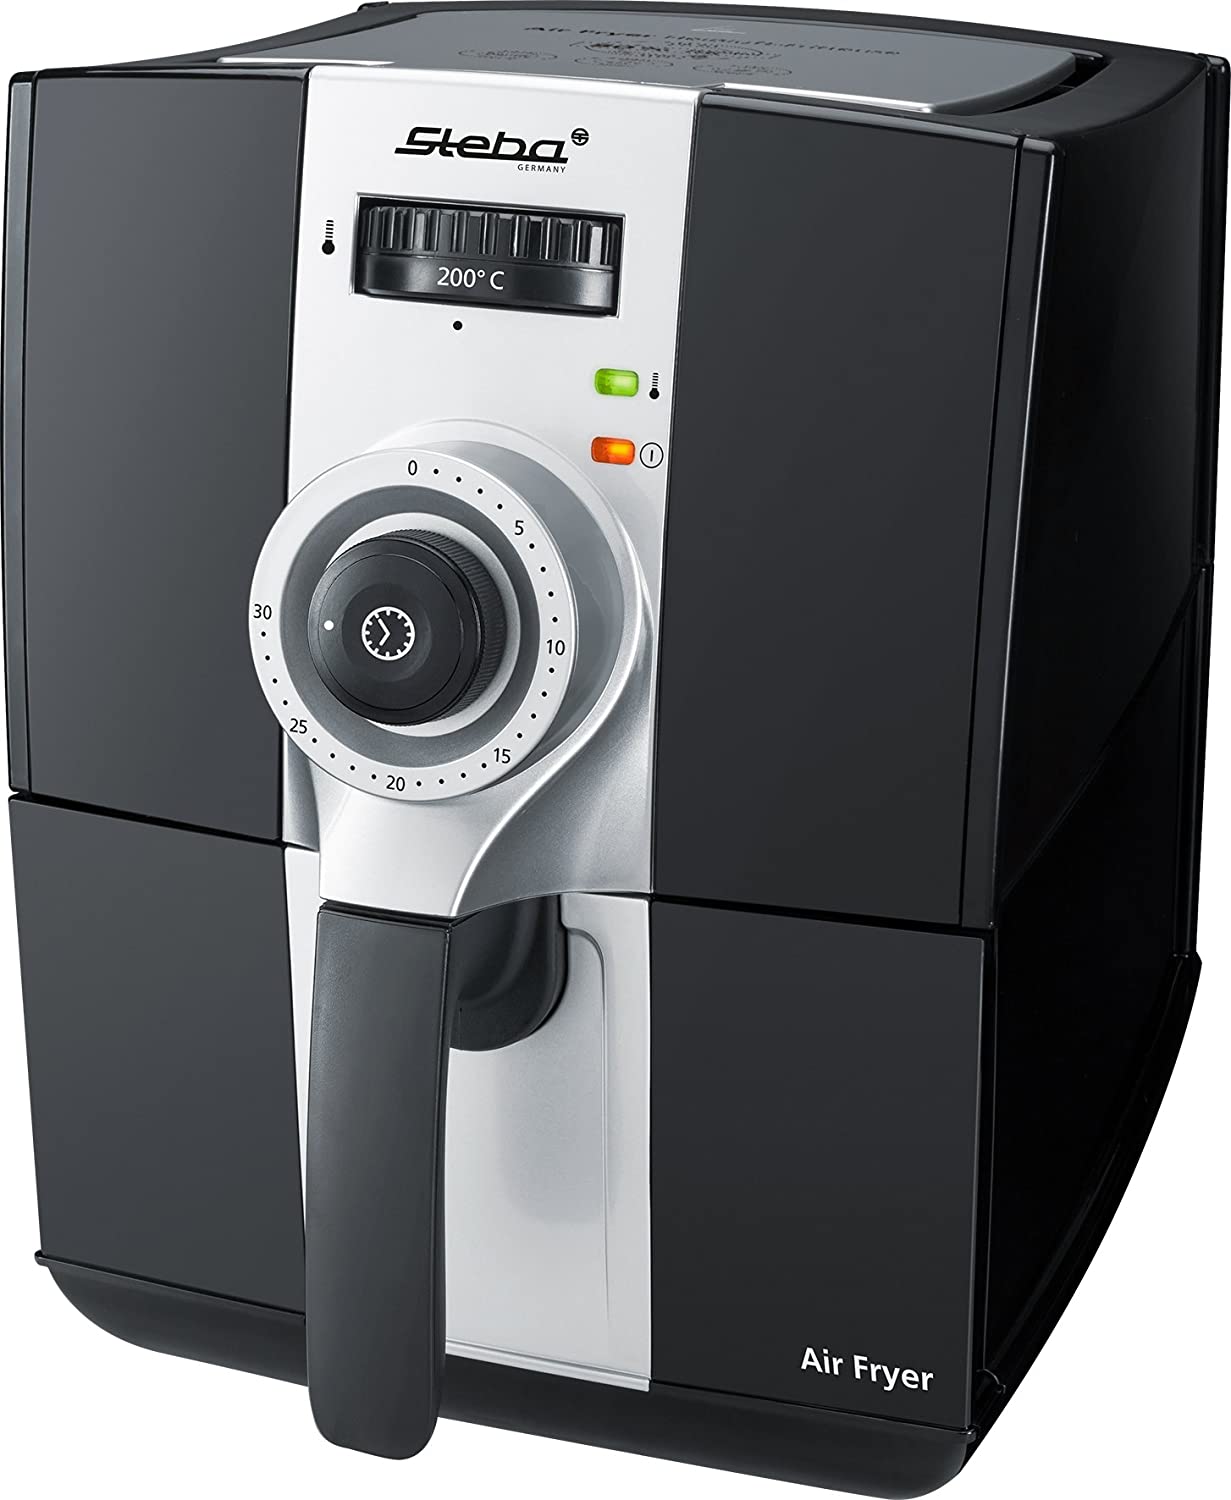 Steba HF 900 Hot Air Fryer, 2 Litre Volume Up to 80% less fat, 1500 Watt, Black/Grey